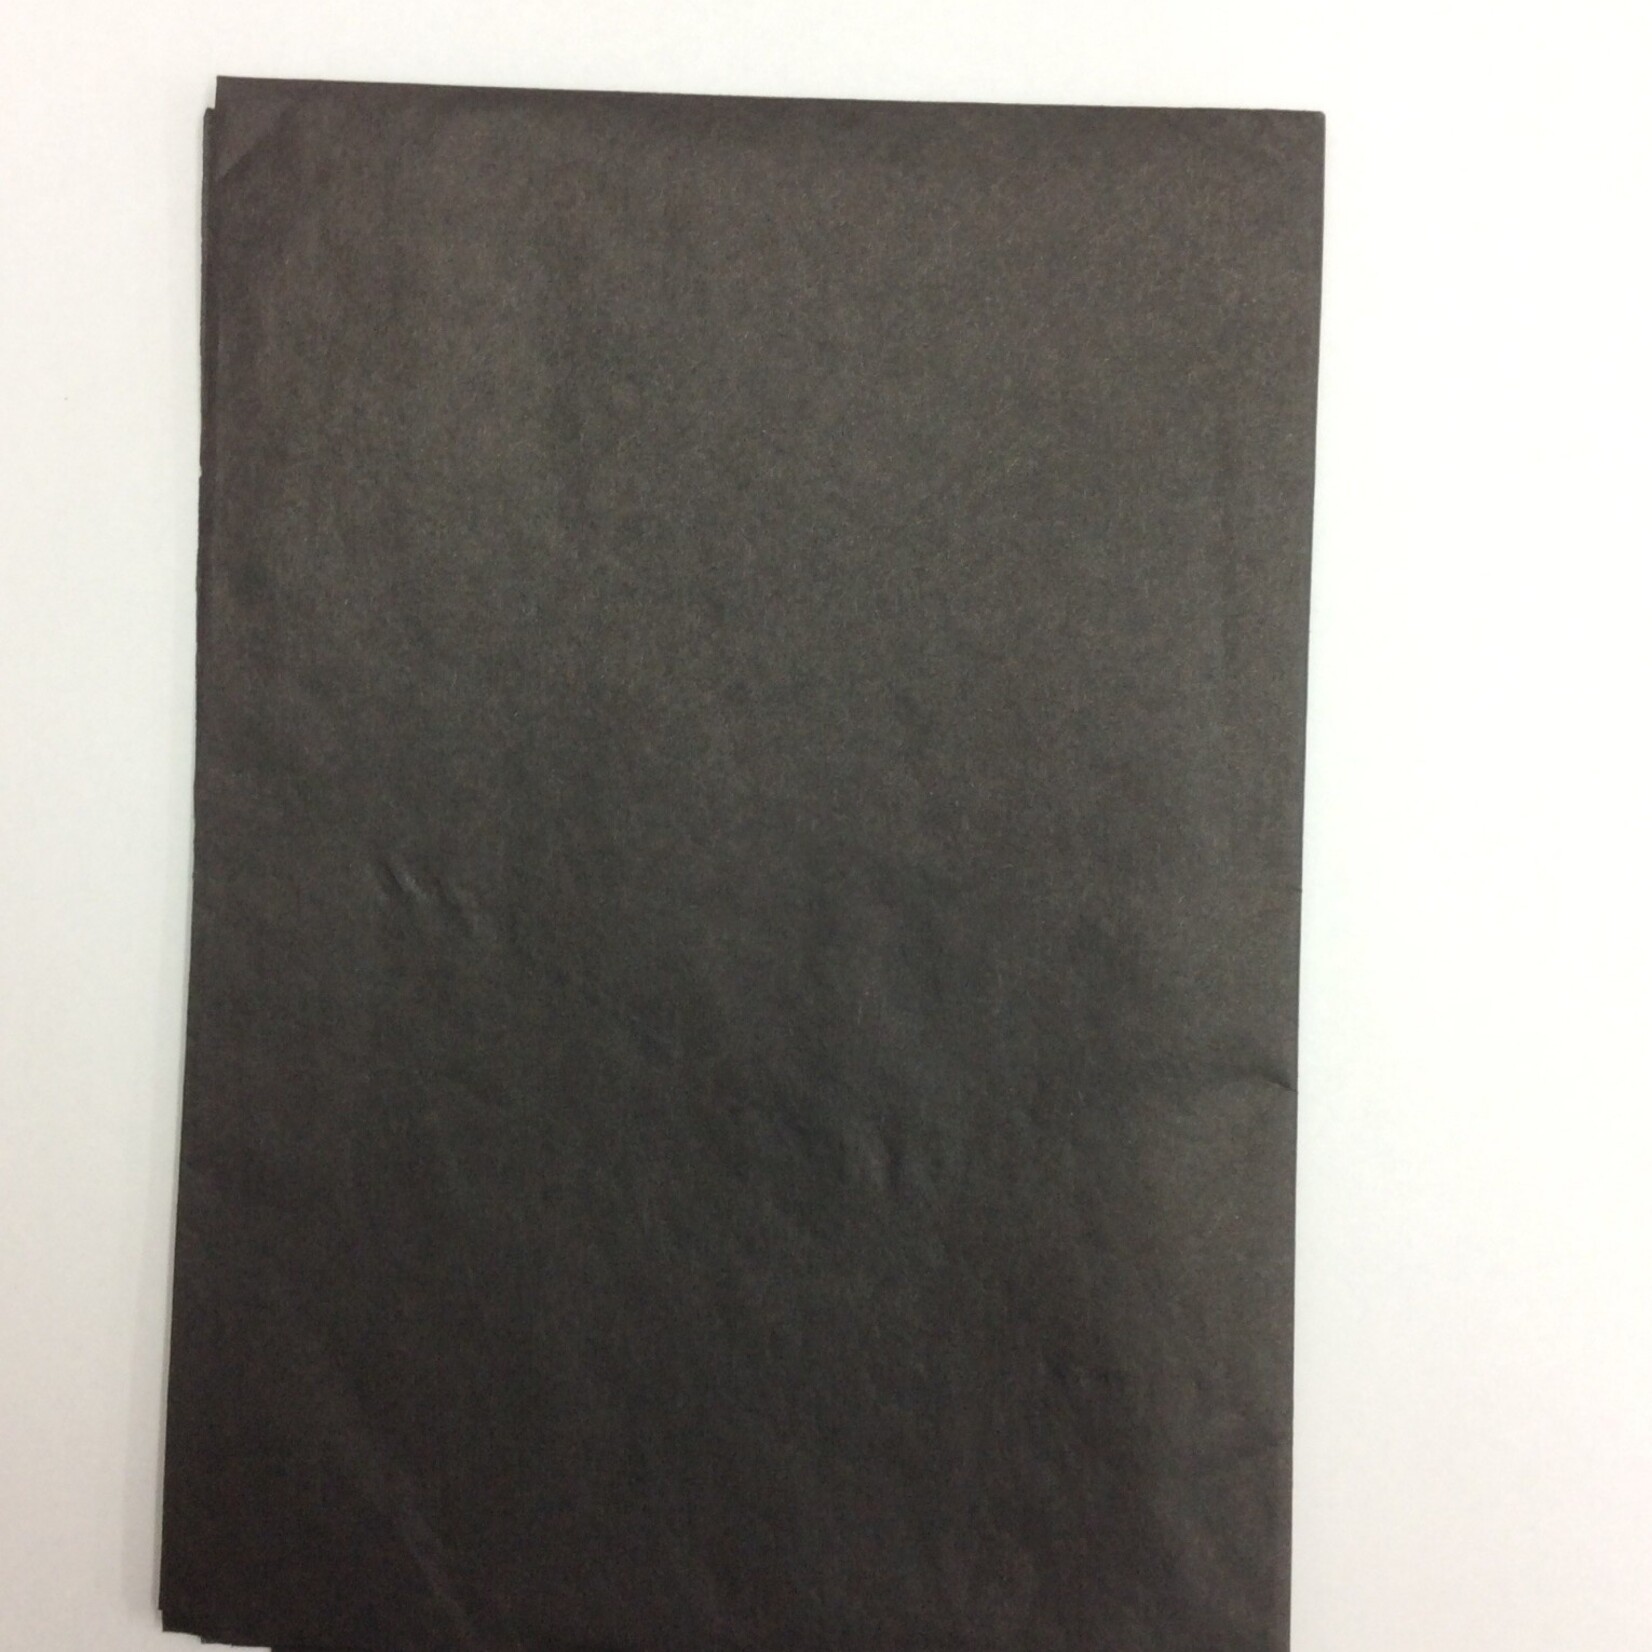 Kite Paper Singles (1pc) Black